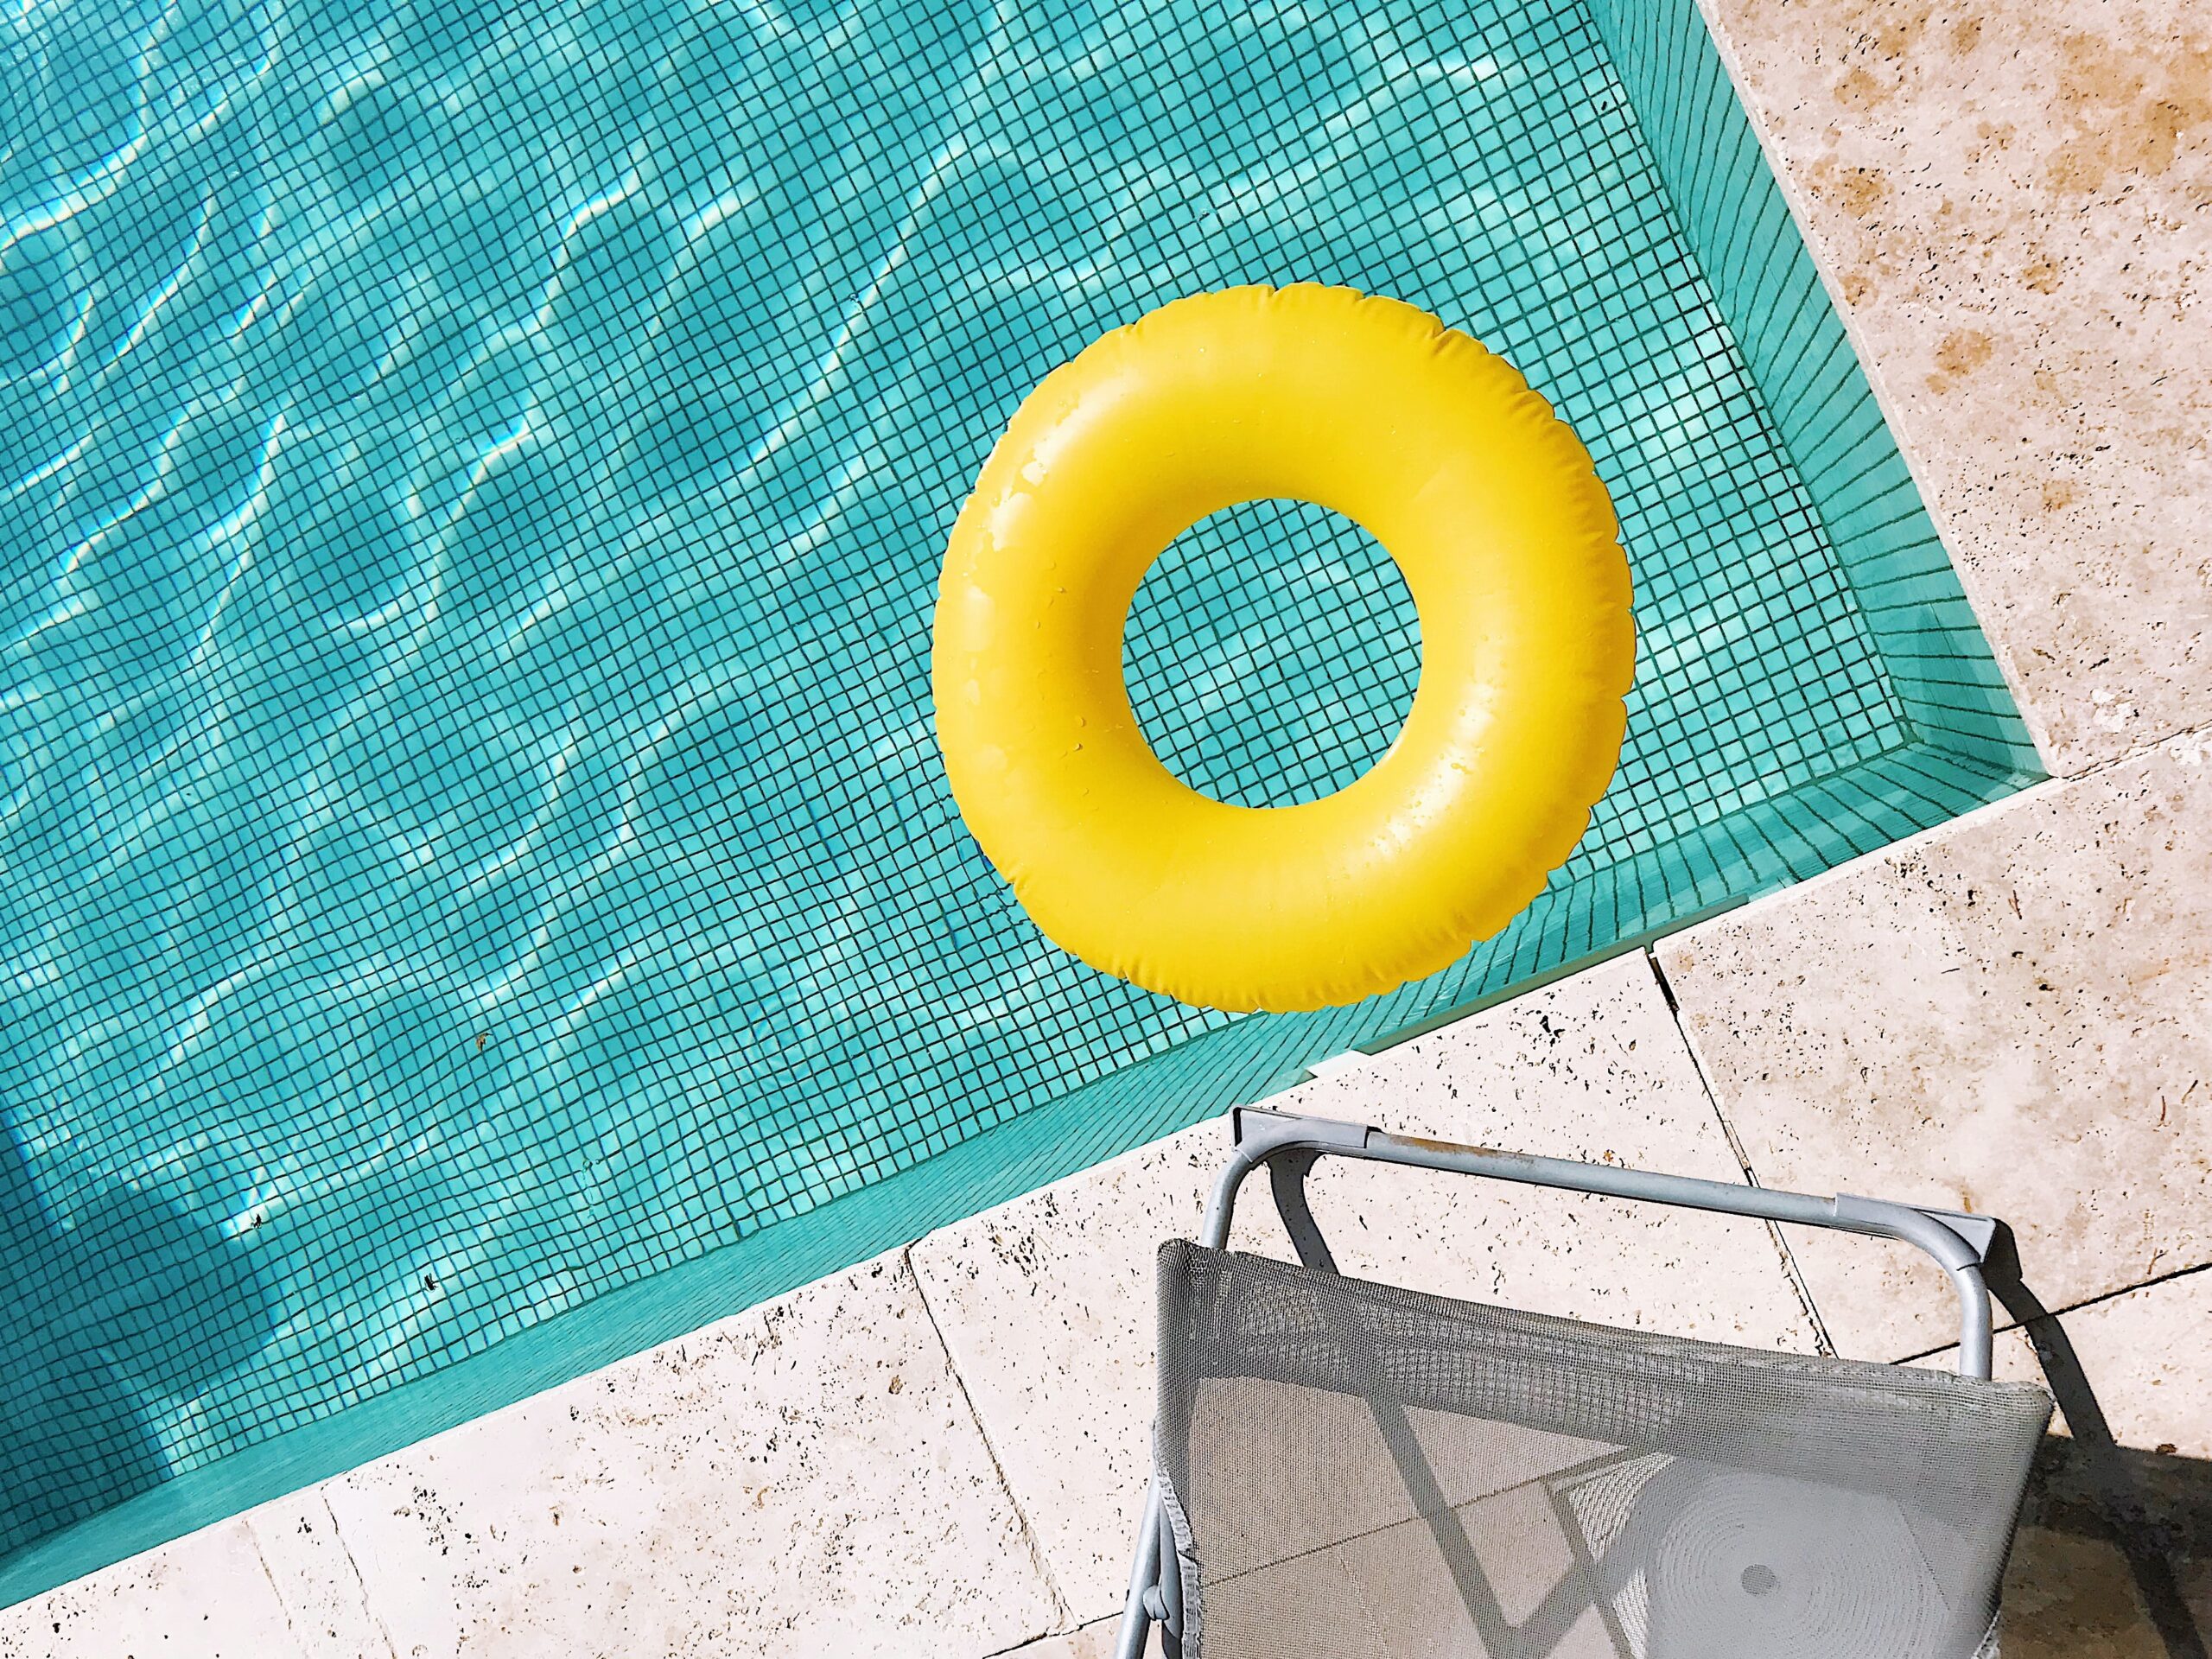 Piscina com revestimento claro, na superfície uma boia redonda amarela com furo no meio